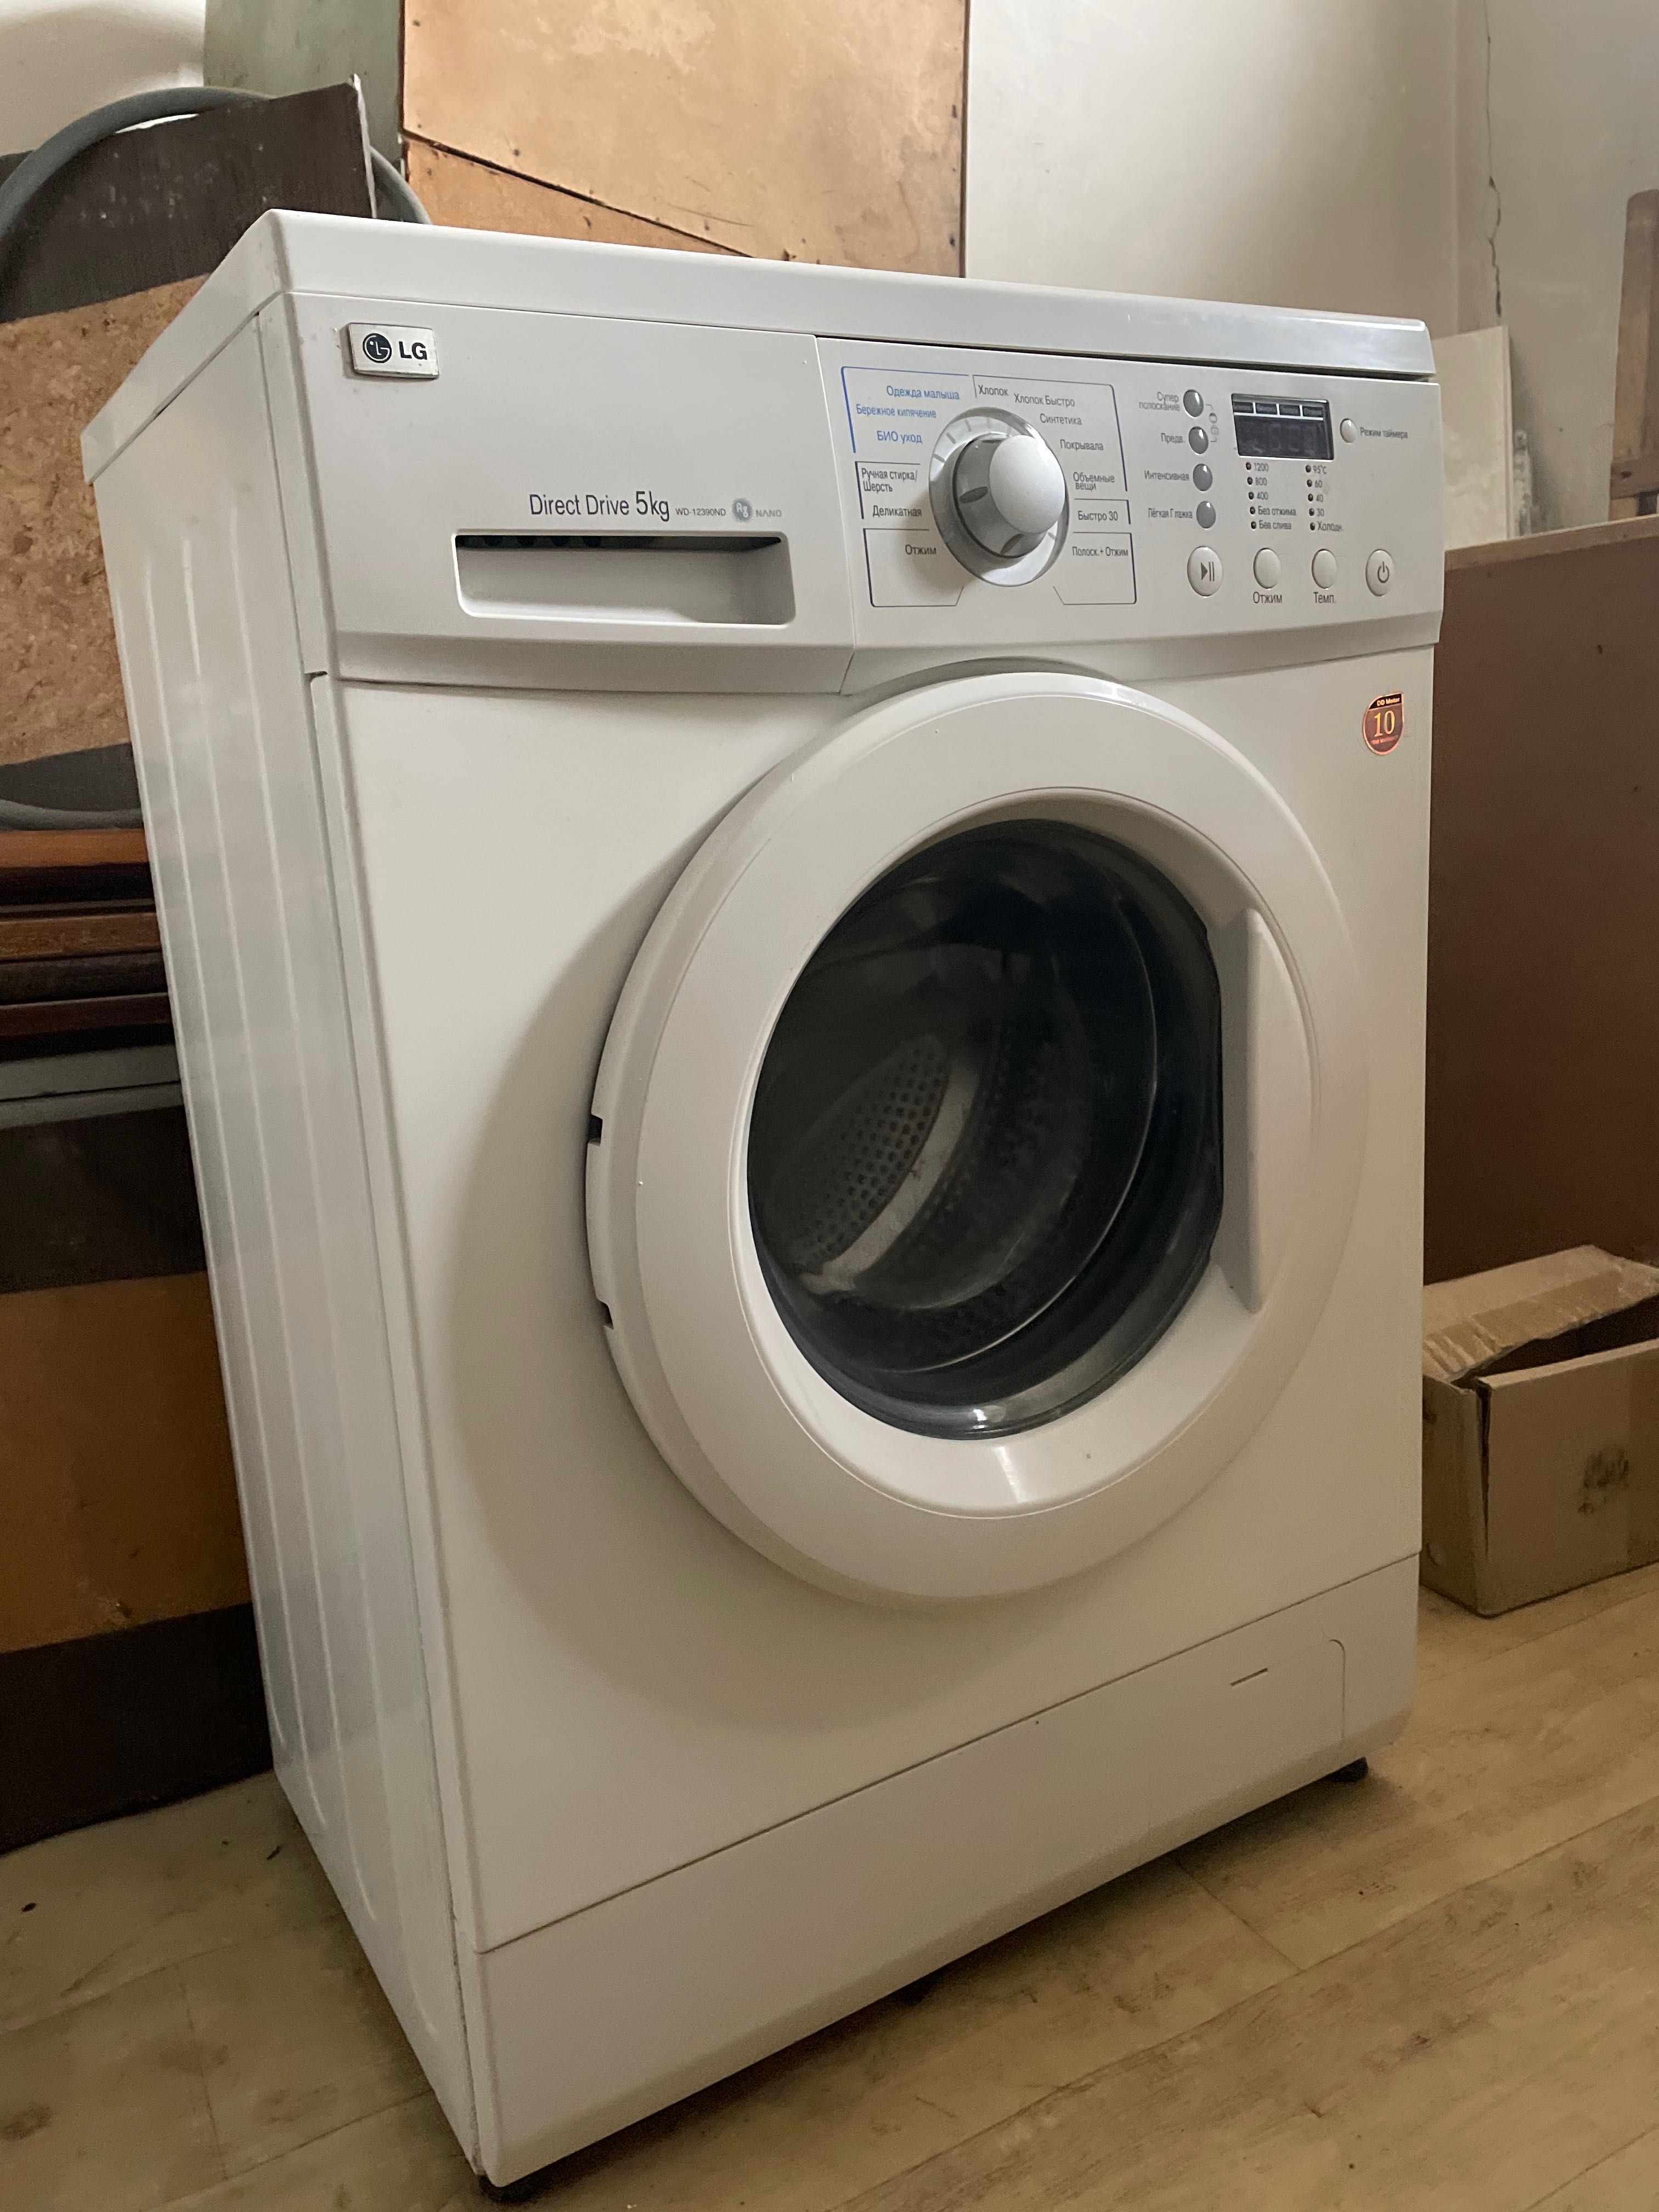 Продам стиральную машинку “LG “на 5 кг.в отличном состоянии